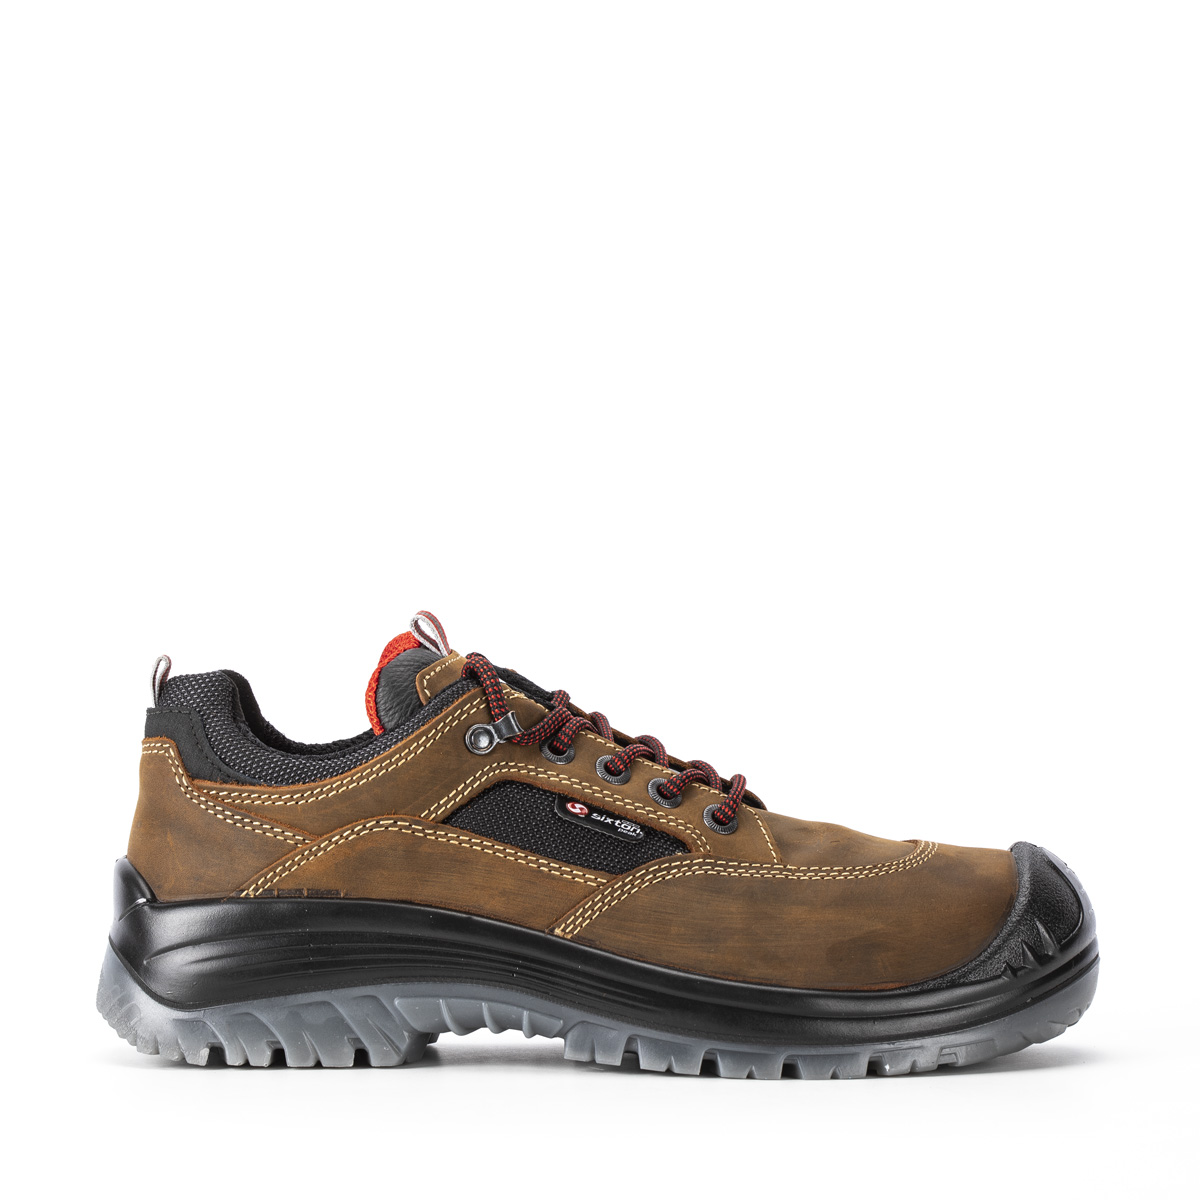 Endurance LAND - Halbschuh con classe di protezione S3 SRC - Codice modello  81153-01L Sixton Peak Safety Shoes